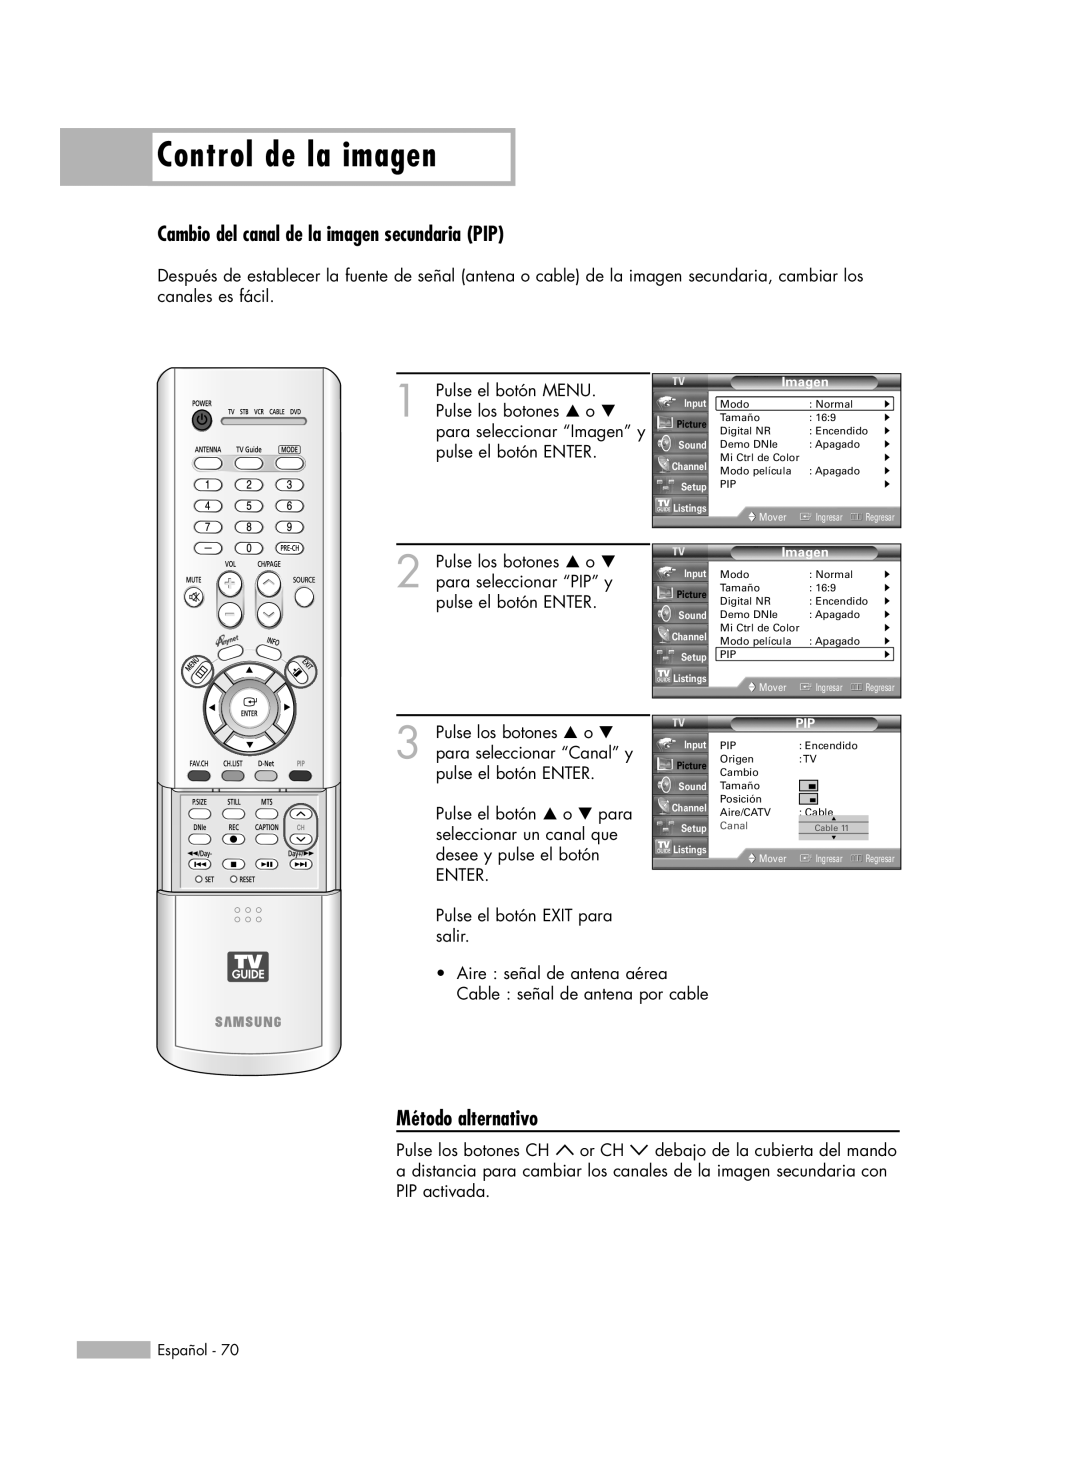 Samsung HL-R5678W, HL-R6178W manual Cambio del canal de la imagen secundaria PIP, Control de la imagen, Método alternativo 